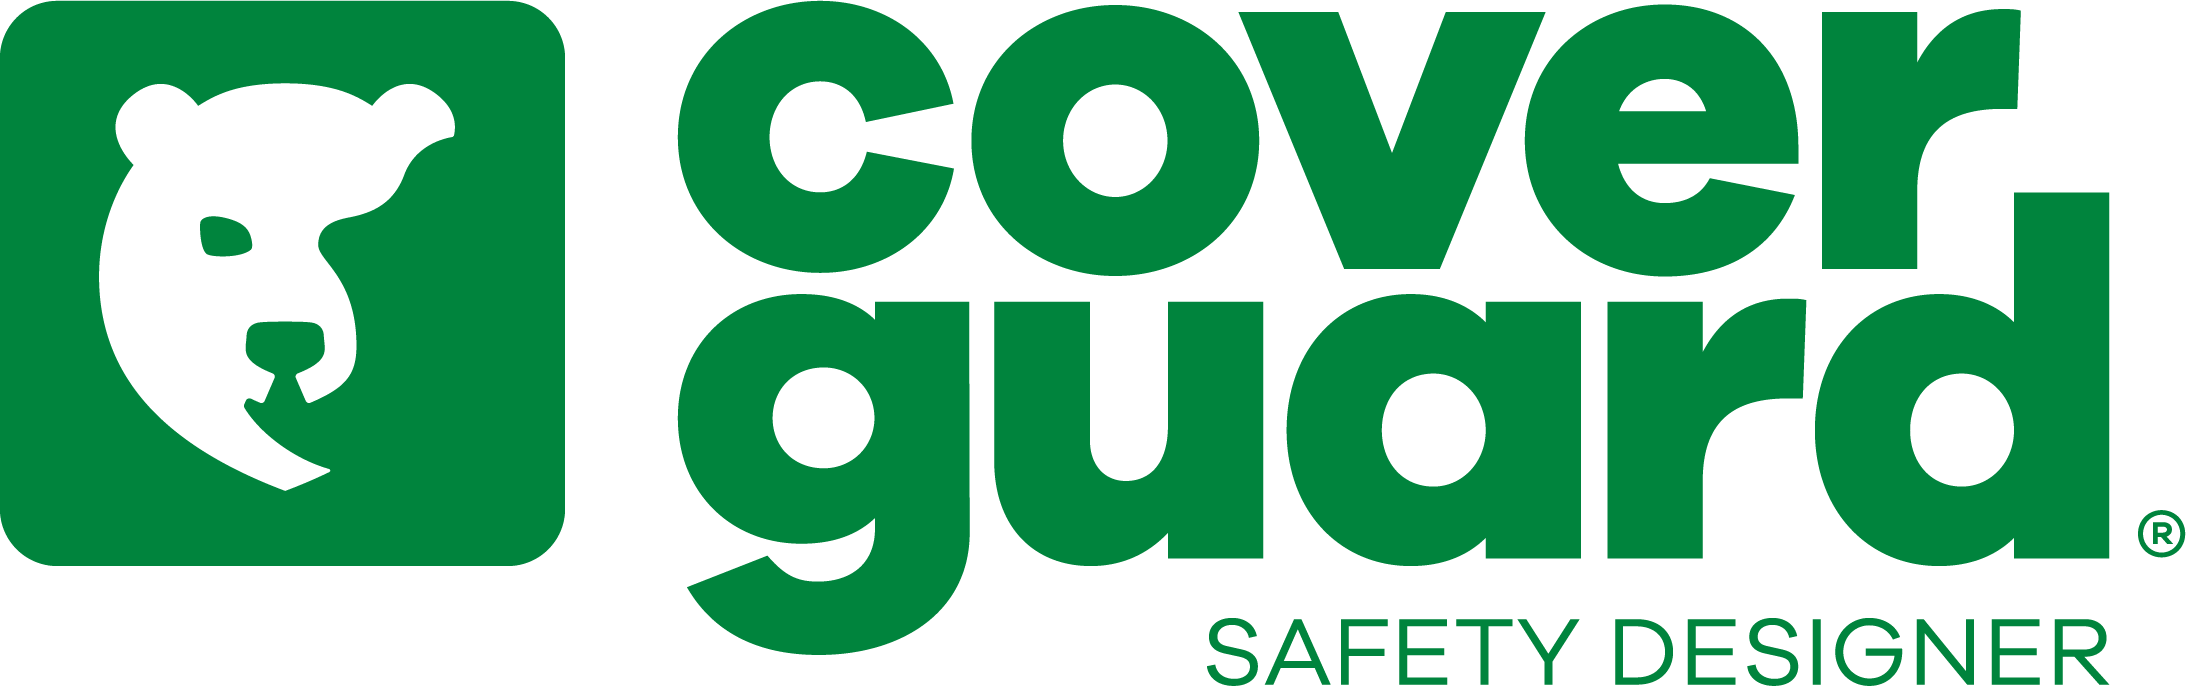 Coverguard - Az egyéni védőeszközök piacvezetője